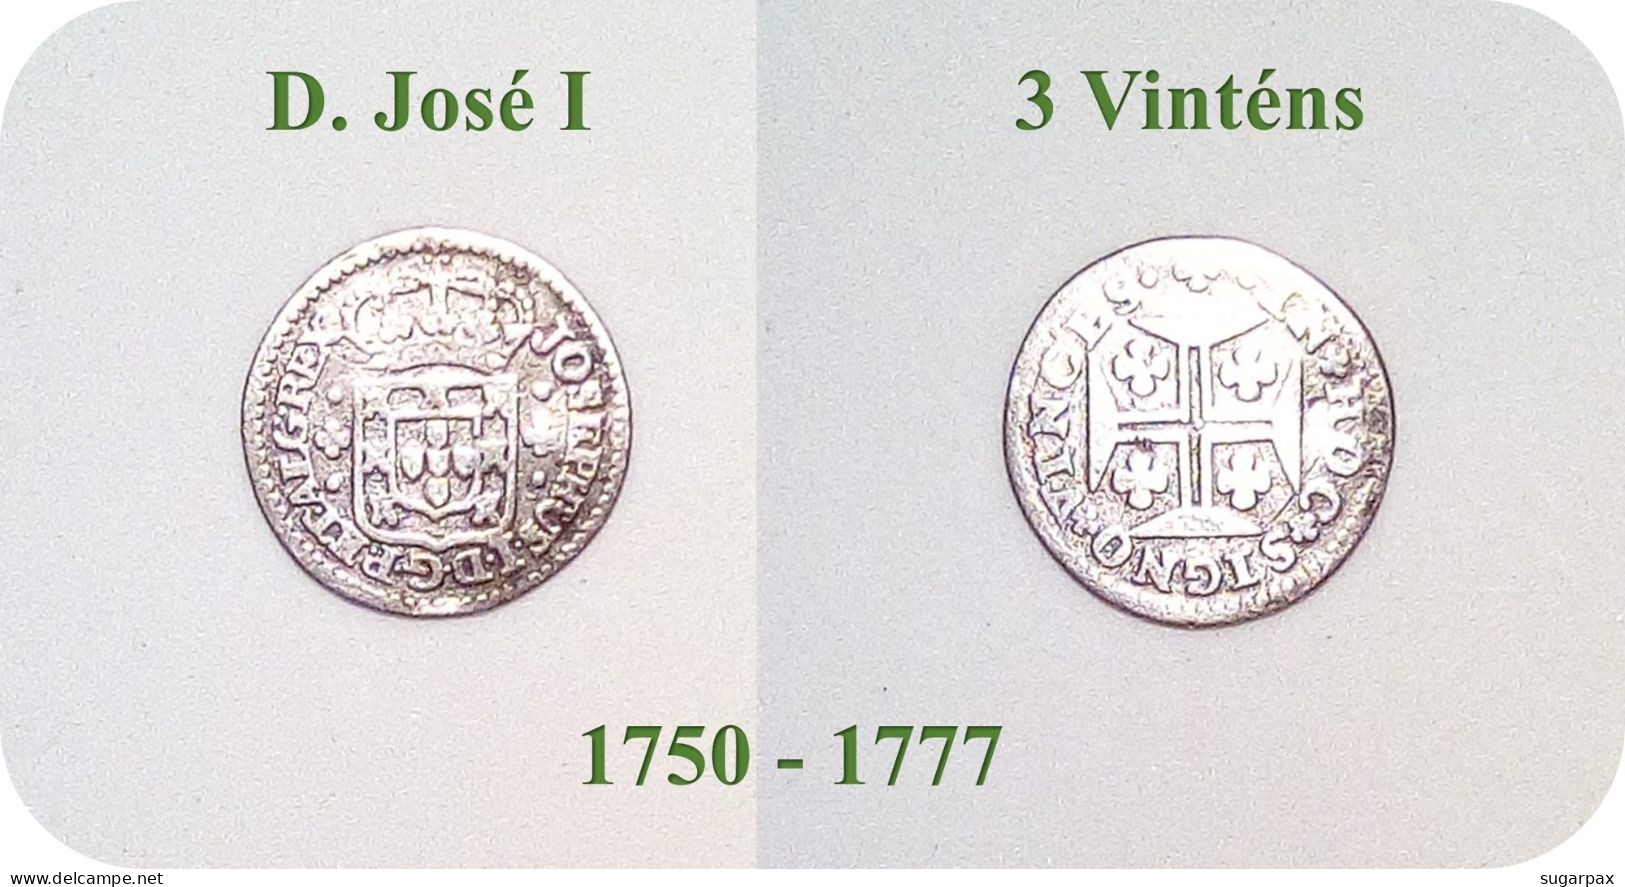 D. José I - 3 Vinténs - N/D ( 1750 - 1777 ) - KM # 237.1 - SILVER ( Ag 916,6 ) - A.G. 15.02 - Monarquia Portugal - Portugal